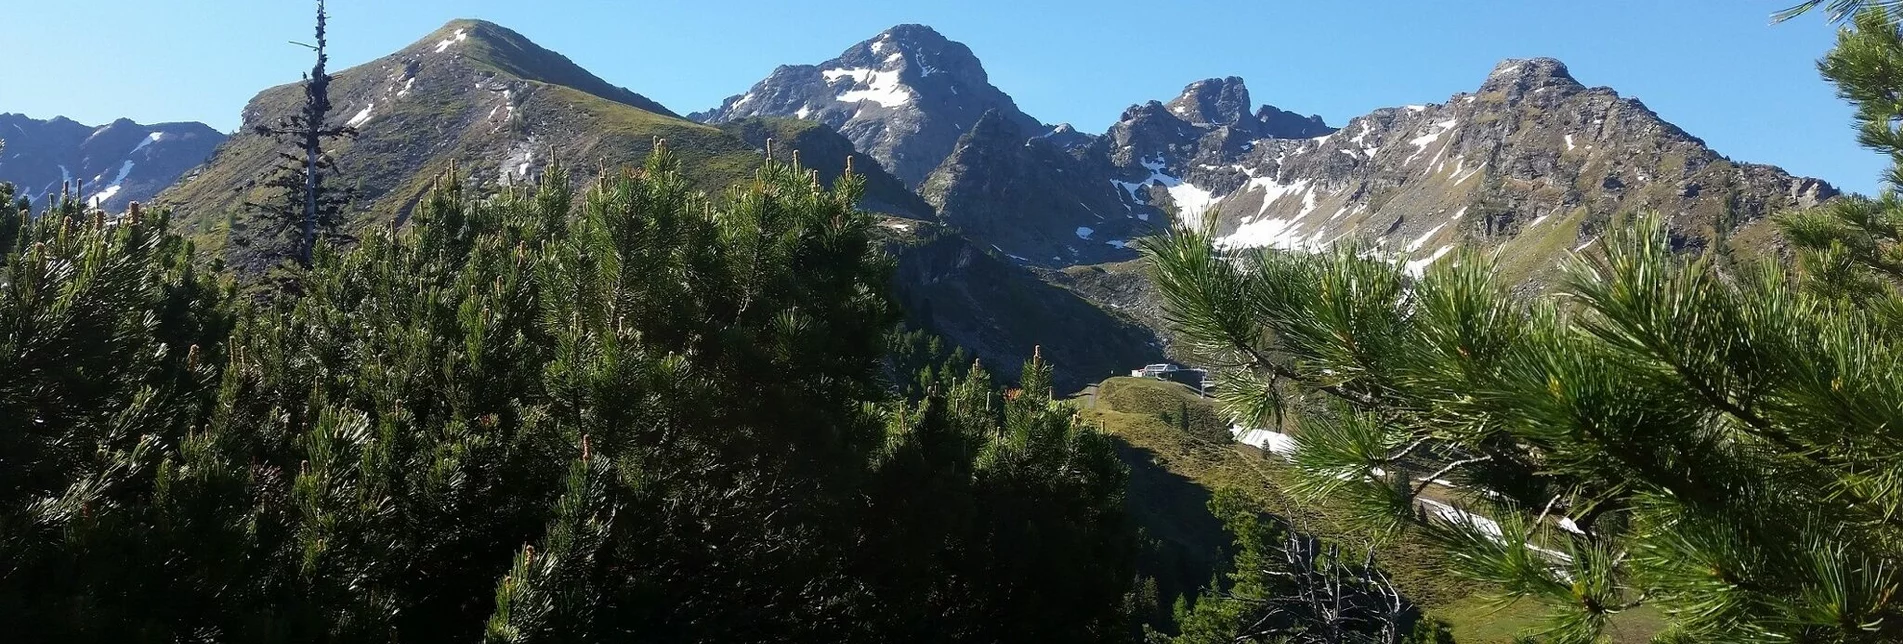 Mountain Hike Hauser Kaibling (2.015 m) - Höchstein (2.543 m) - Moralmsee - Touren-Impression #1 | © TV Haus-Aich-Gössenberg